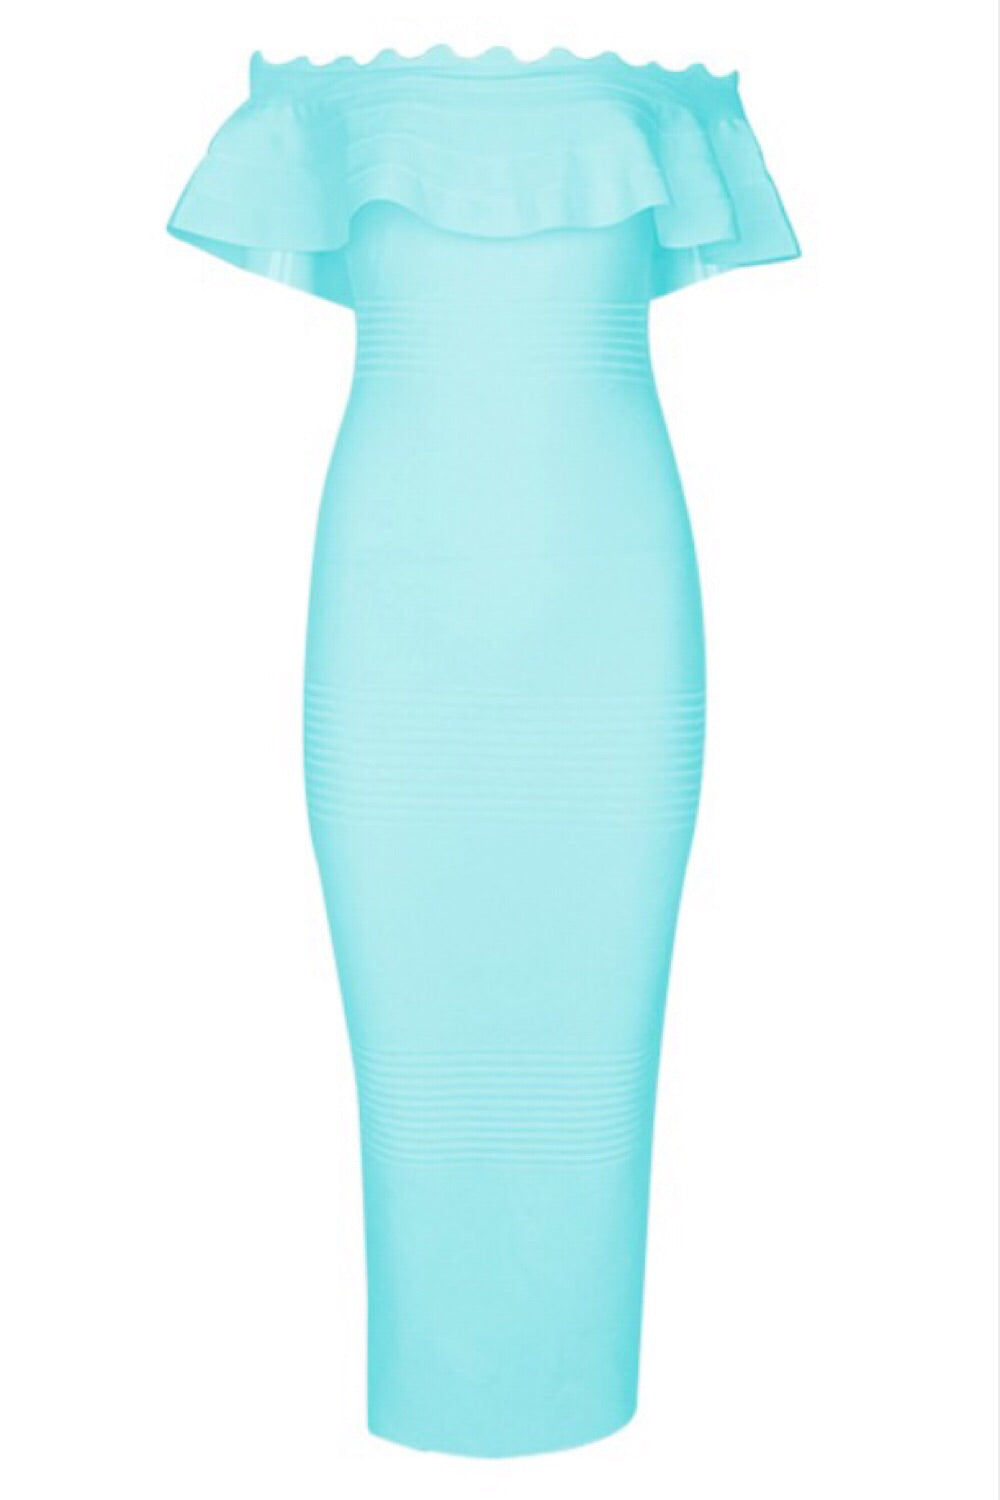 Kiki Aqua Bandage Dress